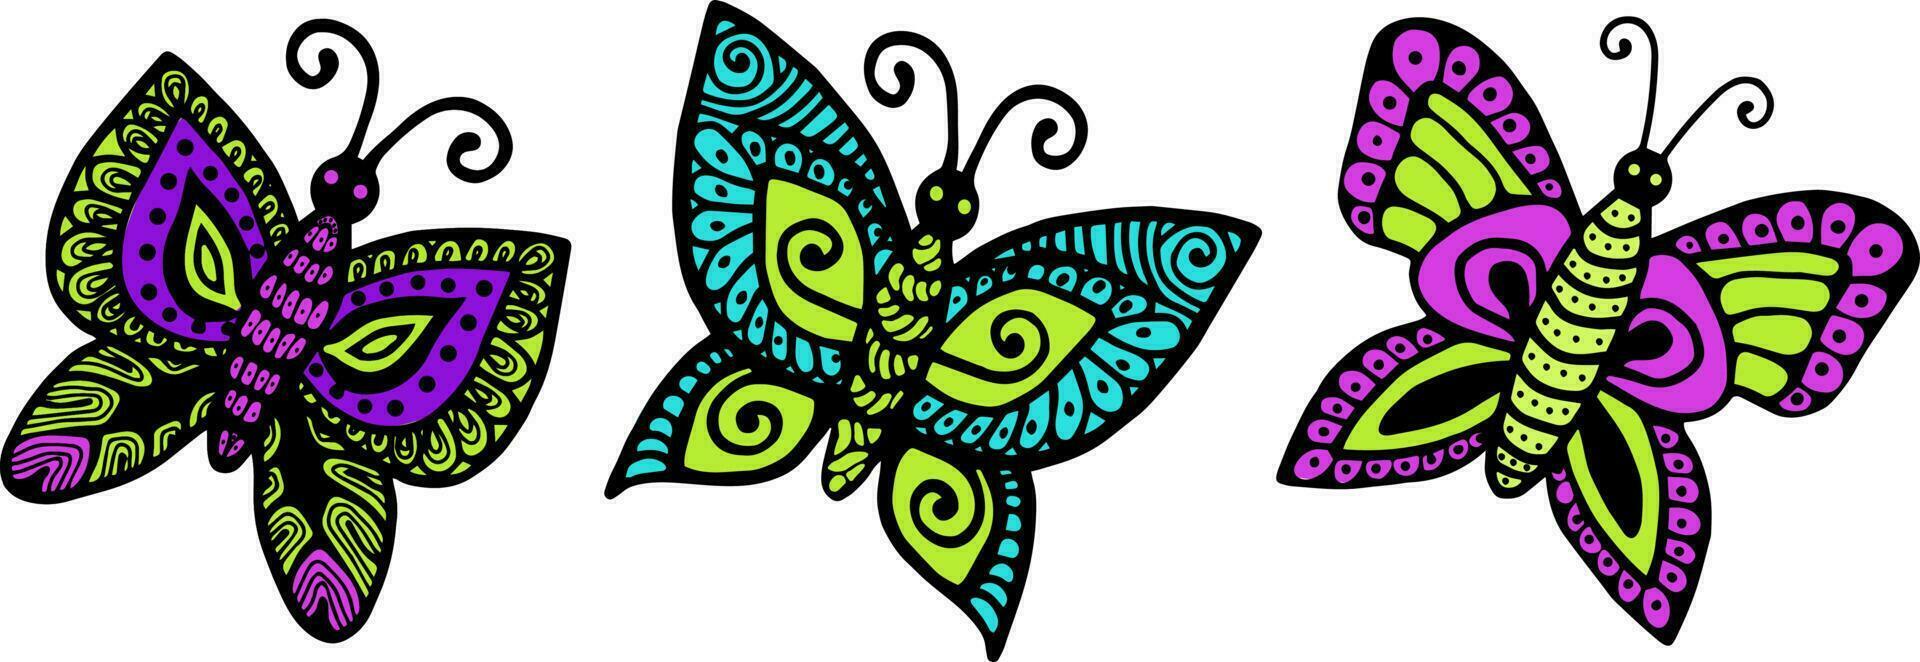 vektor illustration av en uppsättning av ljus fjärilar på en vit bakgrund, vektor fjärilar, tidningar, utskrift på kläder, reklam. skön illustration av en uppsättning av fjärilar.